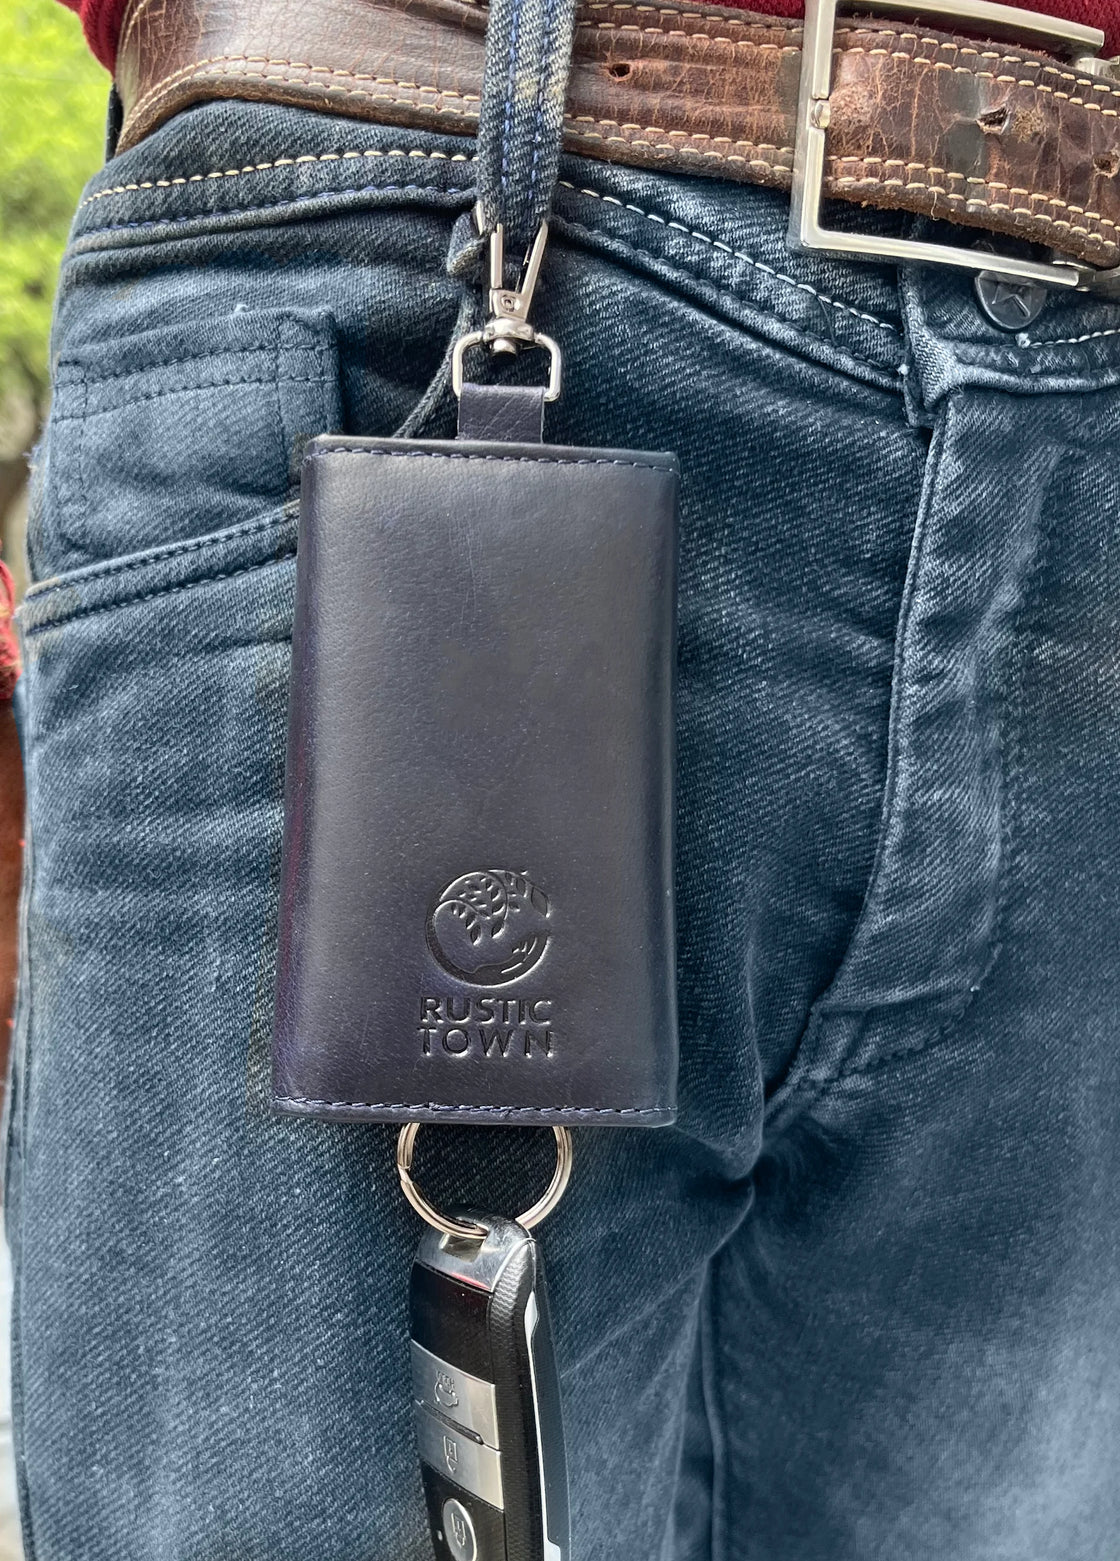 Leather Key Holder Smart Fob Car Key Loop Slim Keychain (Royal Blue)